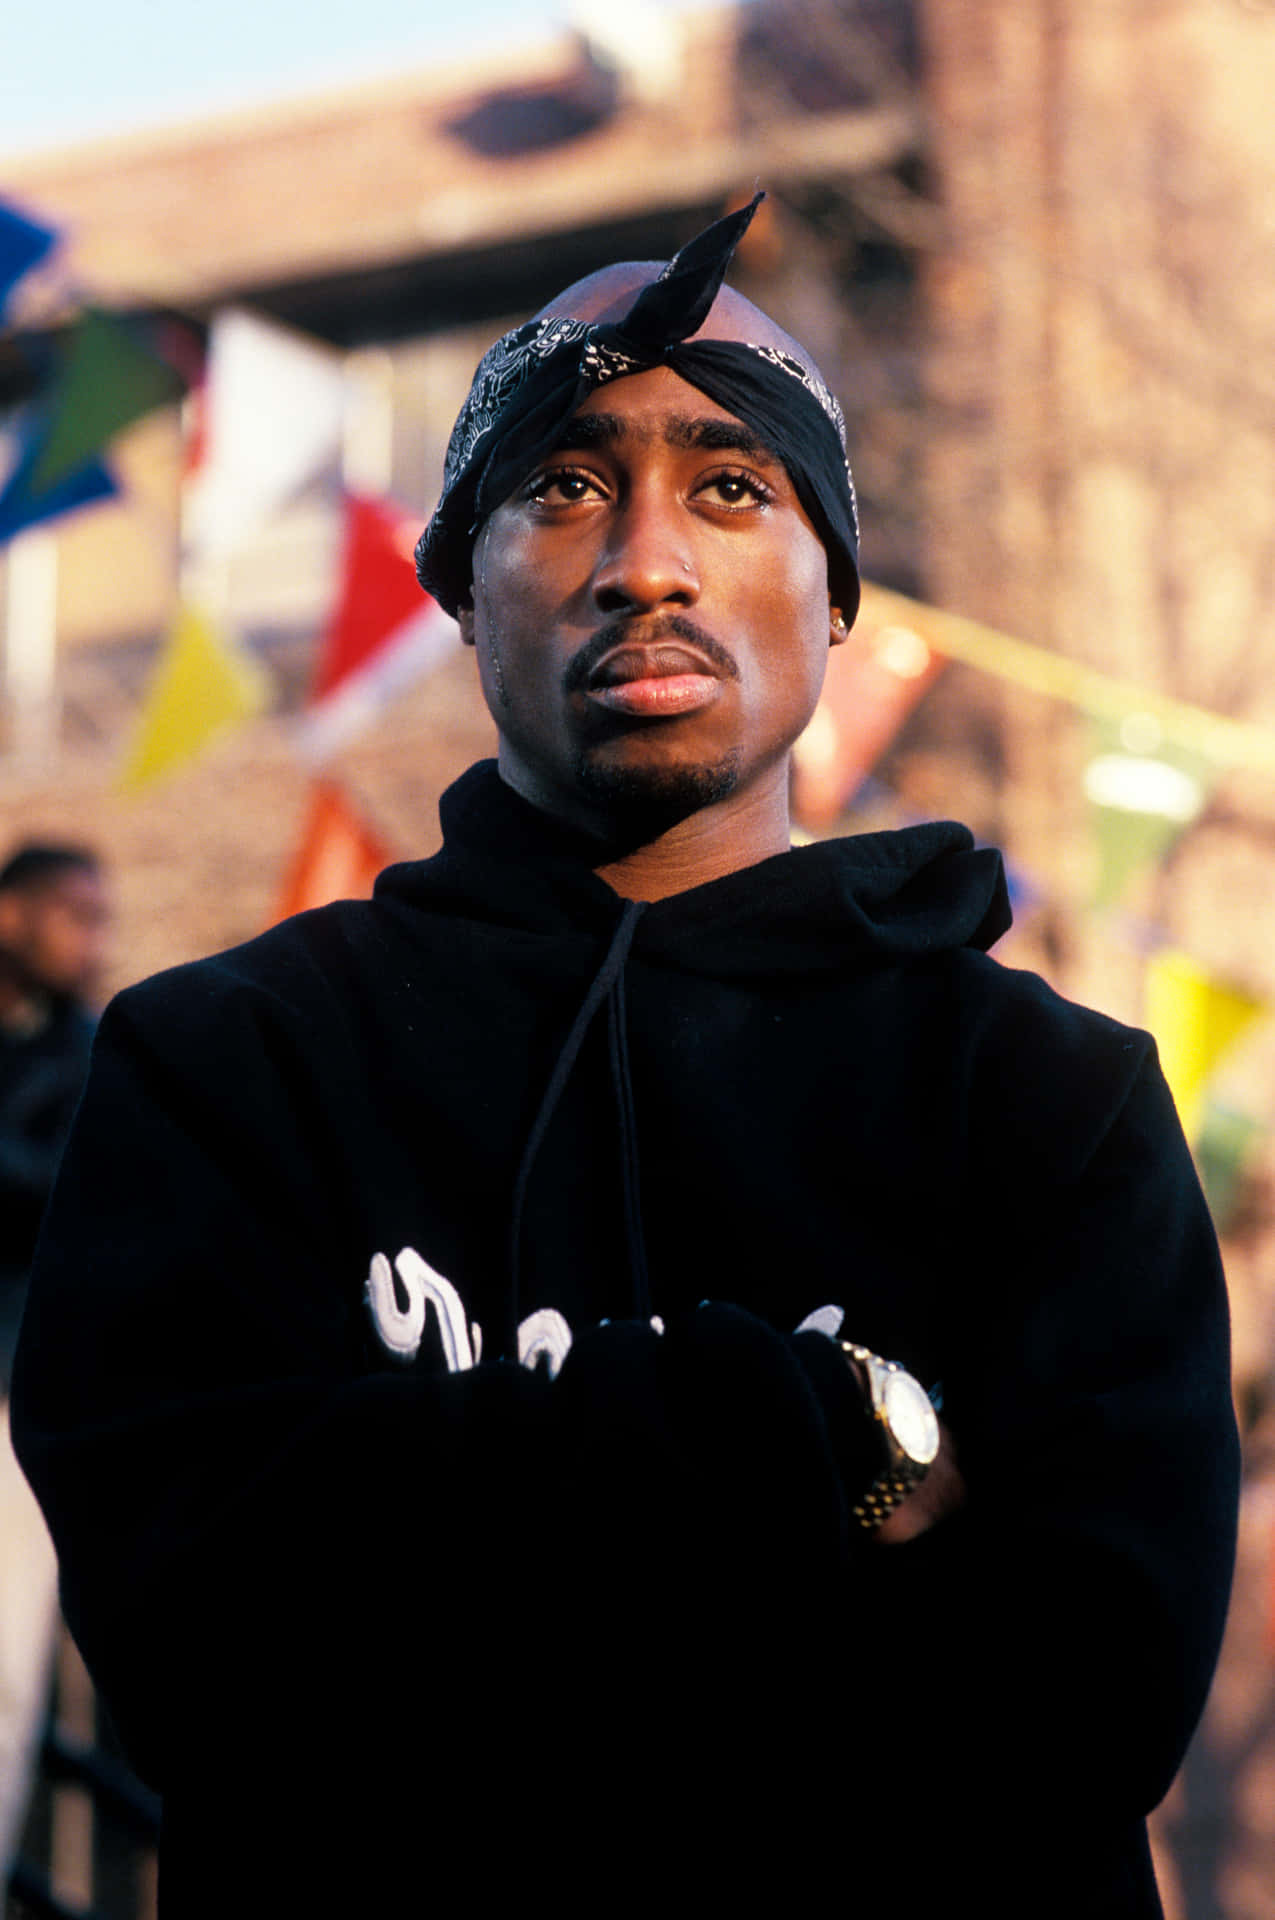 Descrizioneun'immagine Classica In Bianco E Nero Dell'indimenticabile Icona Hip-hop Tupac Shakur.